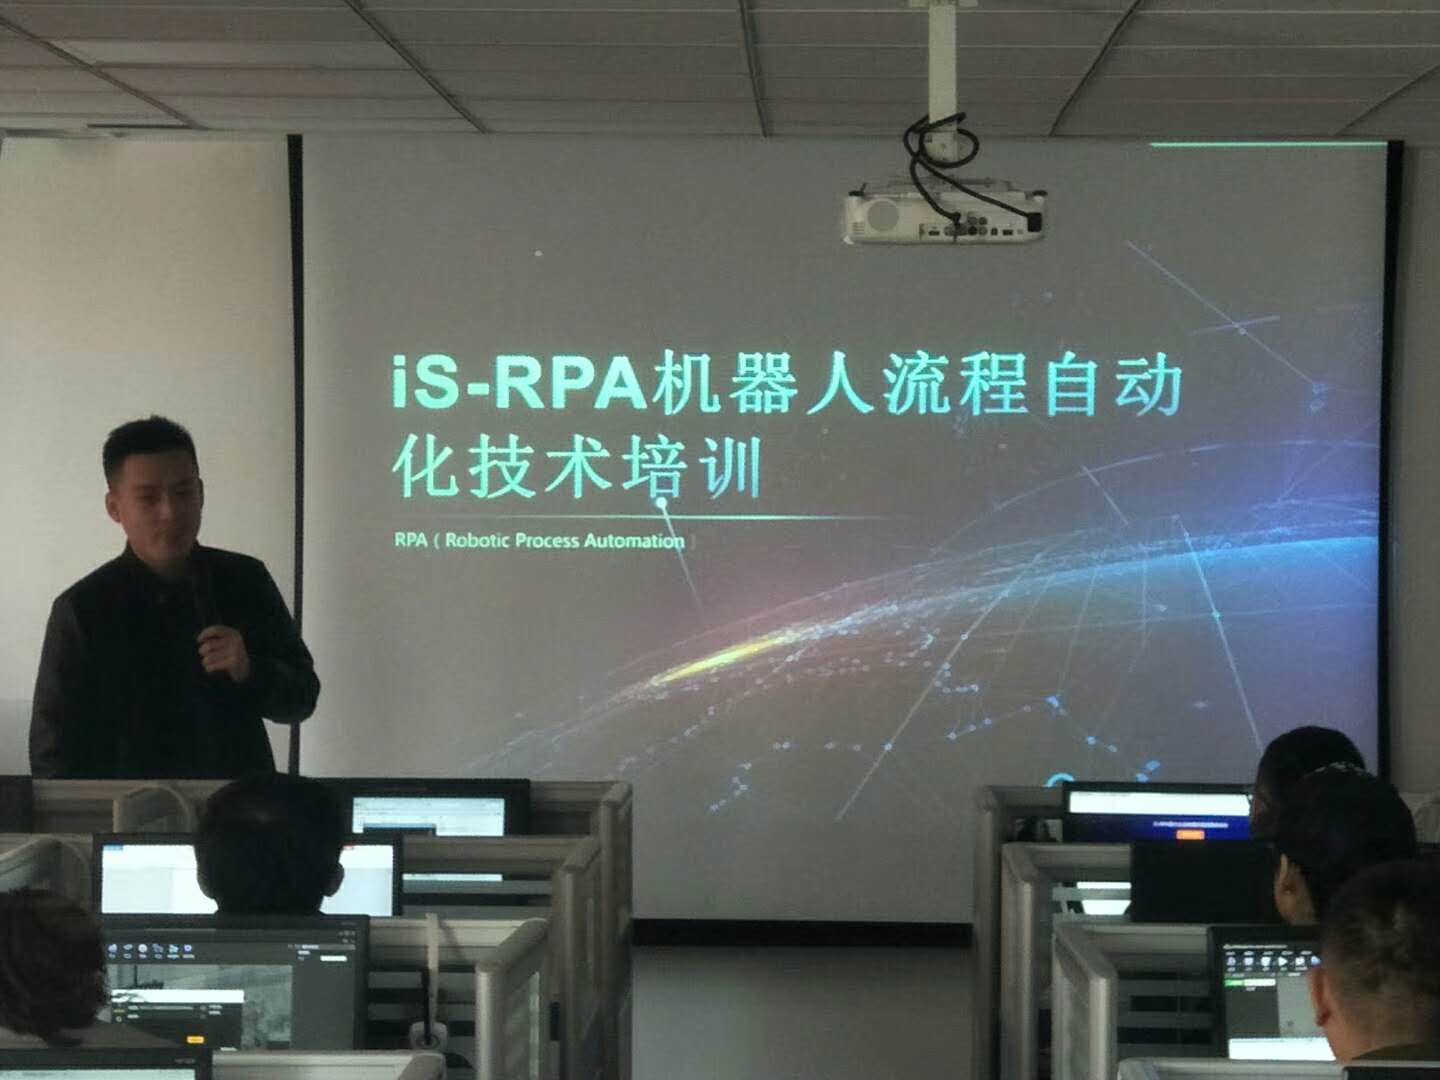 iS-RPA 技术认证培训 - 北京 20190419 班 - 培训完成